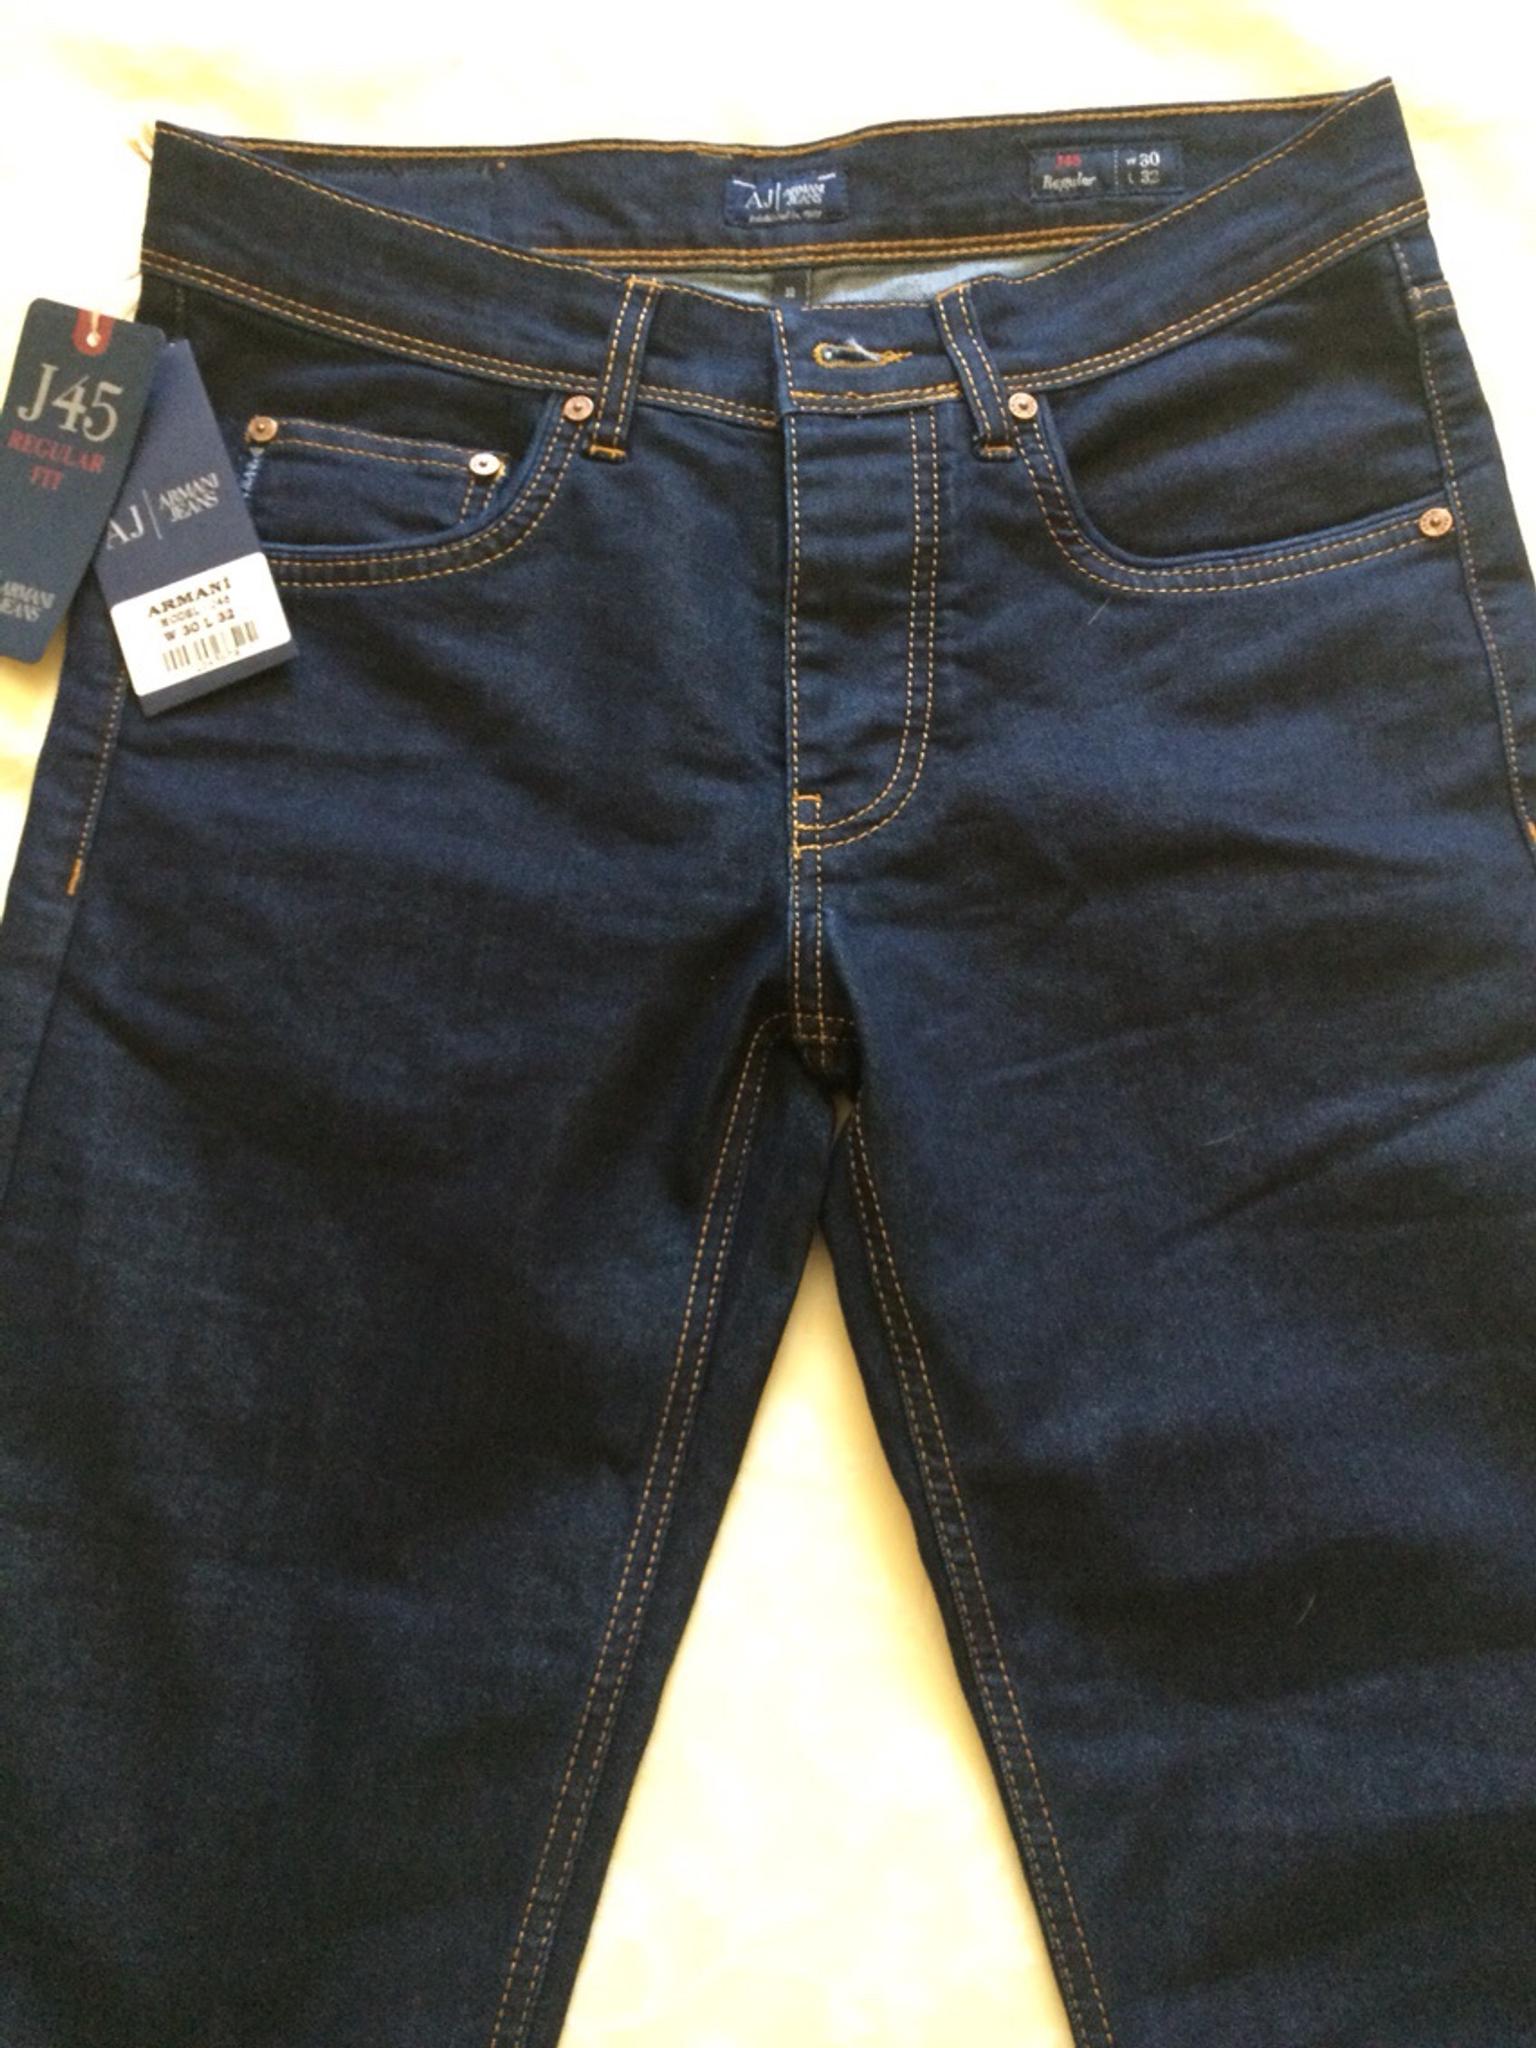 armani j45 regular fit jeans